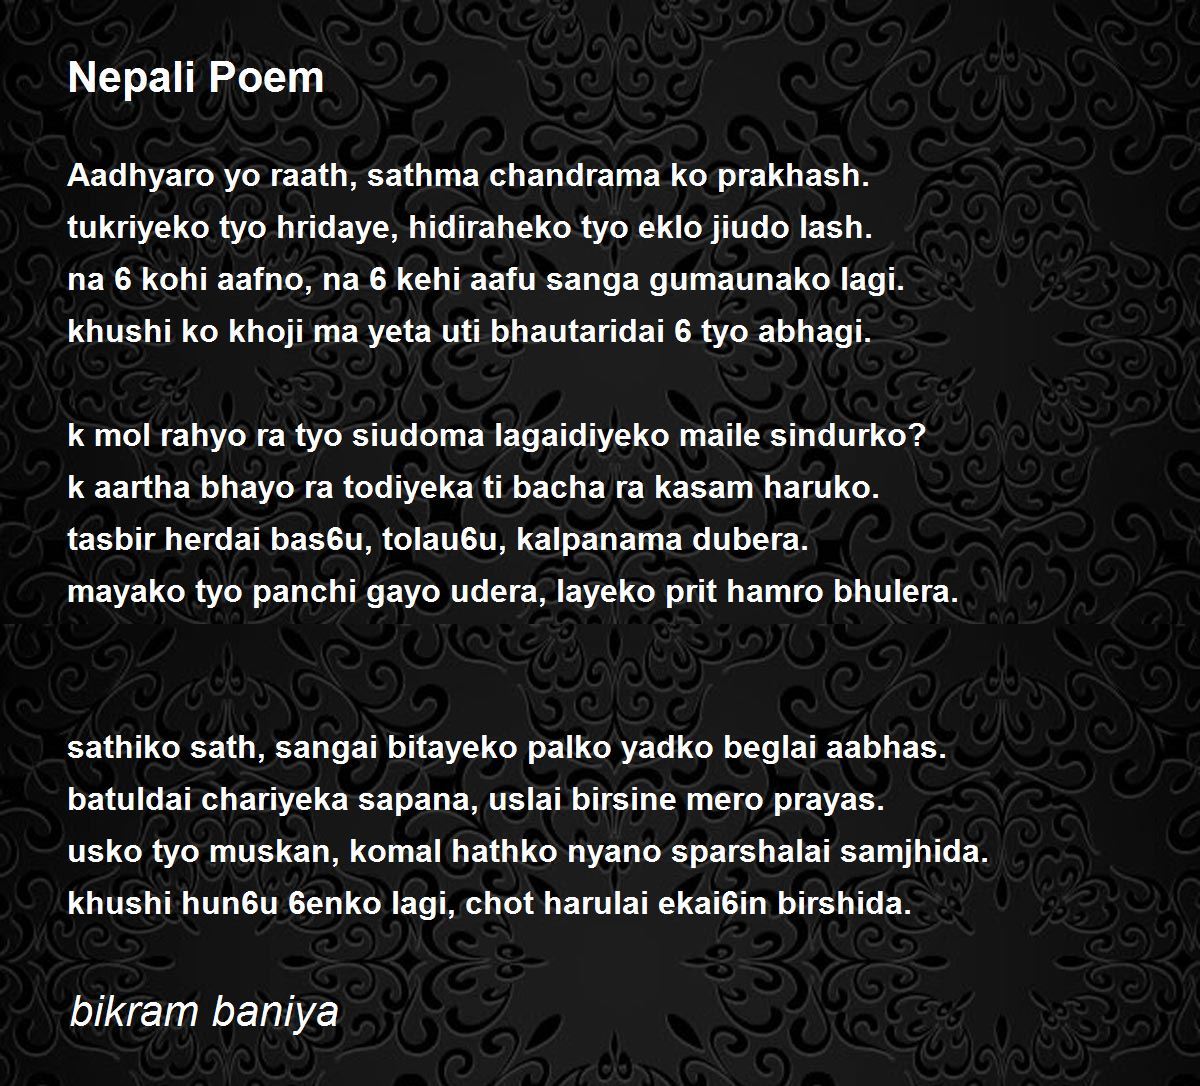 Nepali Poem Poem by bikram baniya - Poem Hunter